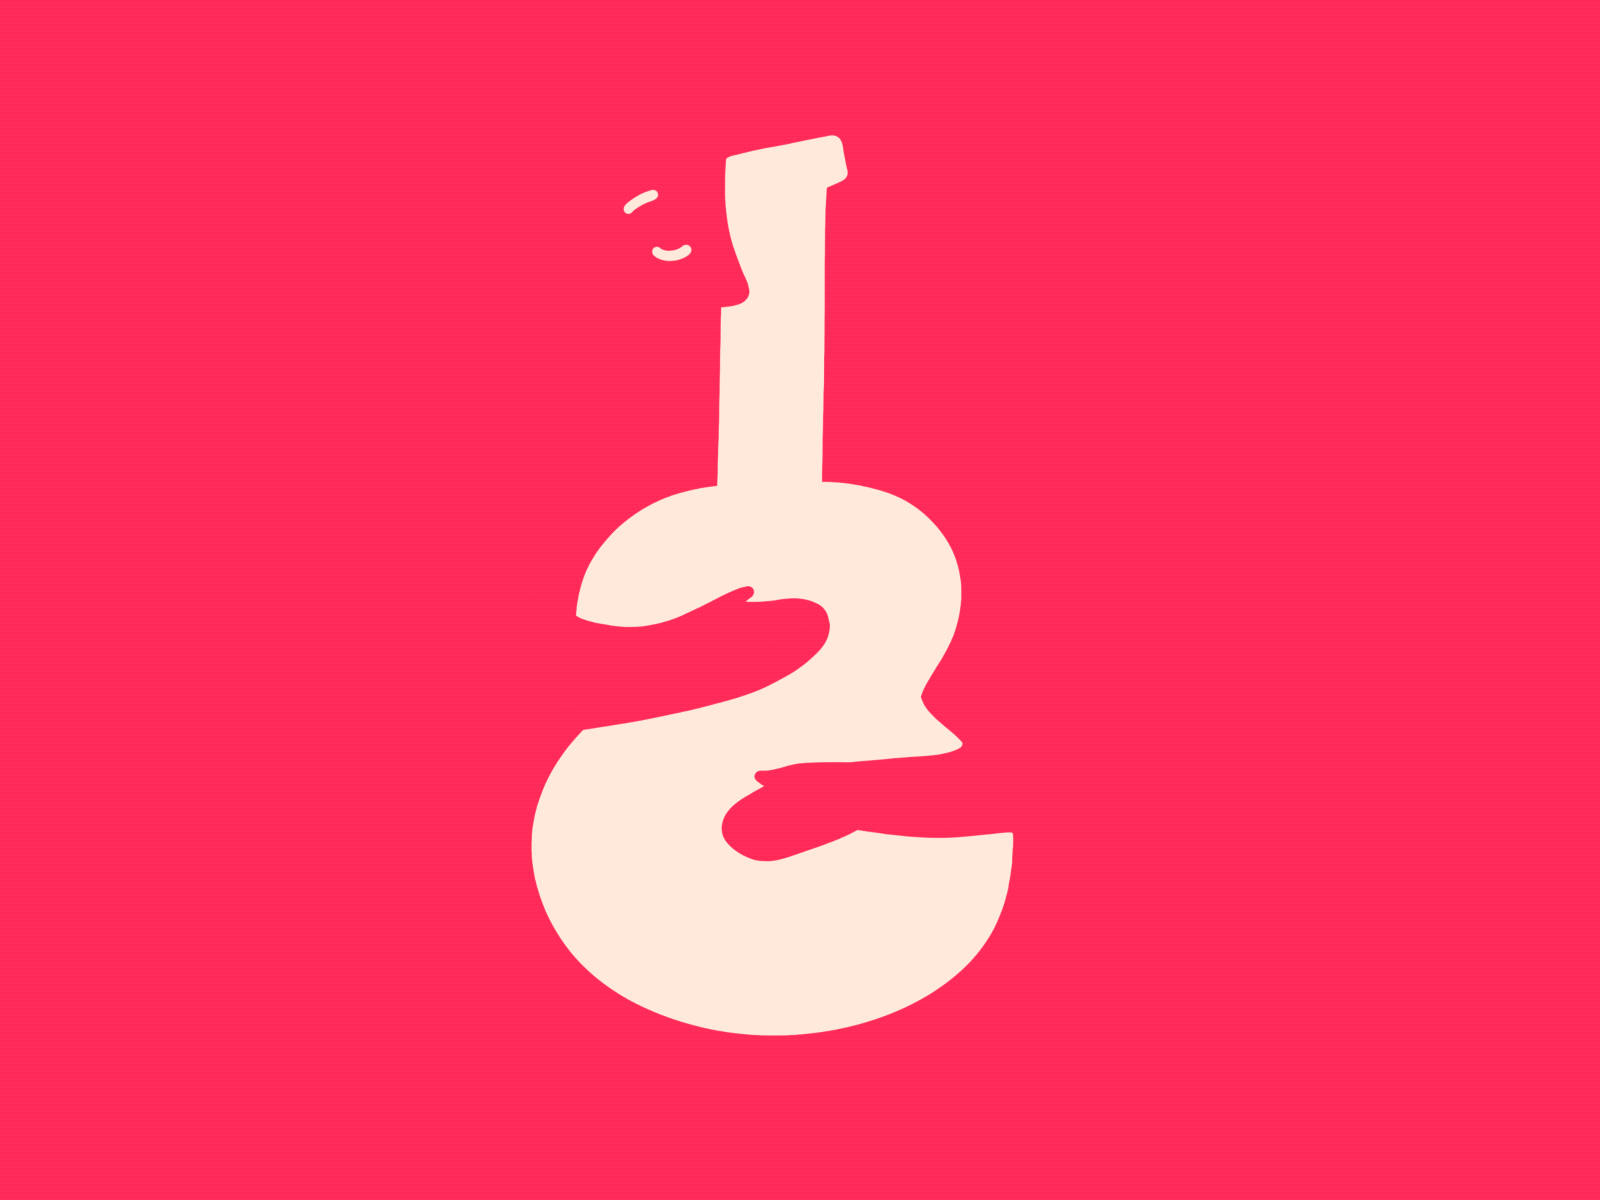 Music Love animation character guitar hug illustration love minimalism minimalist music procreate